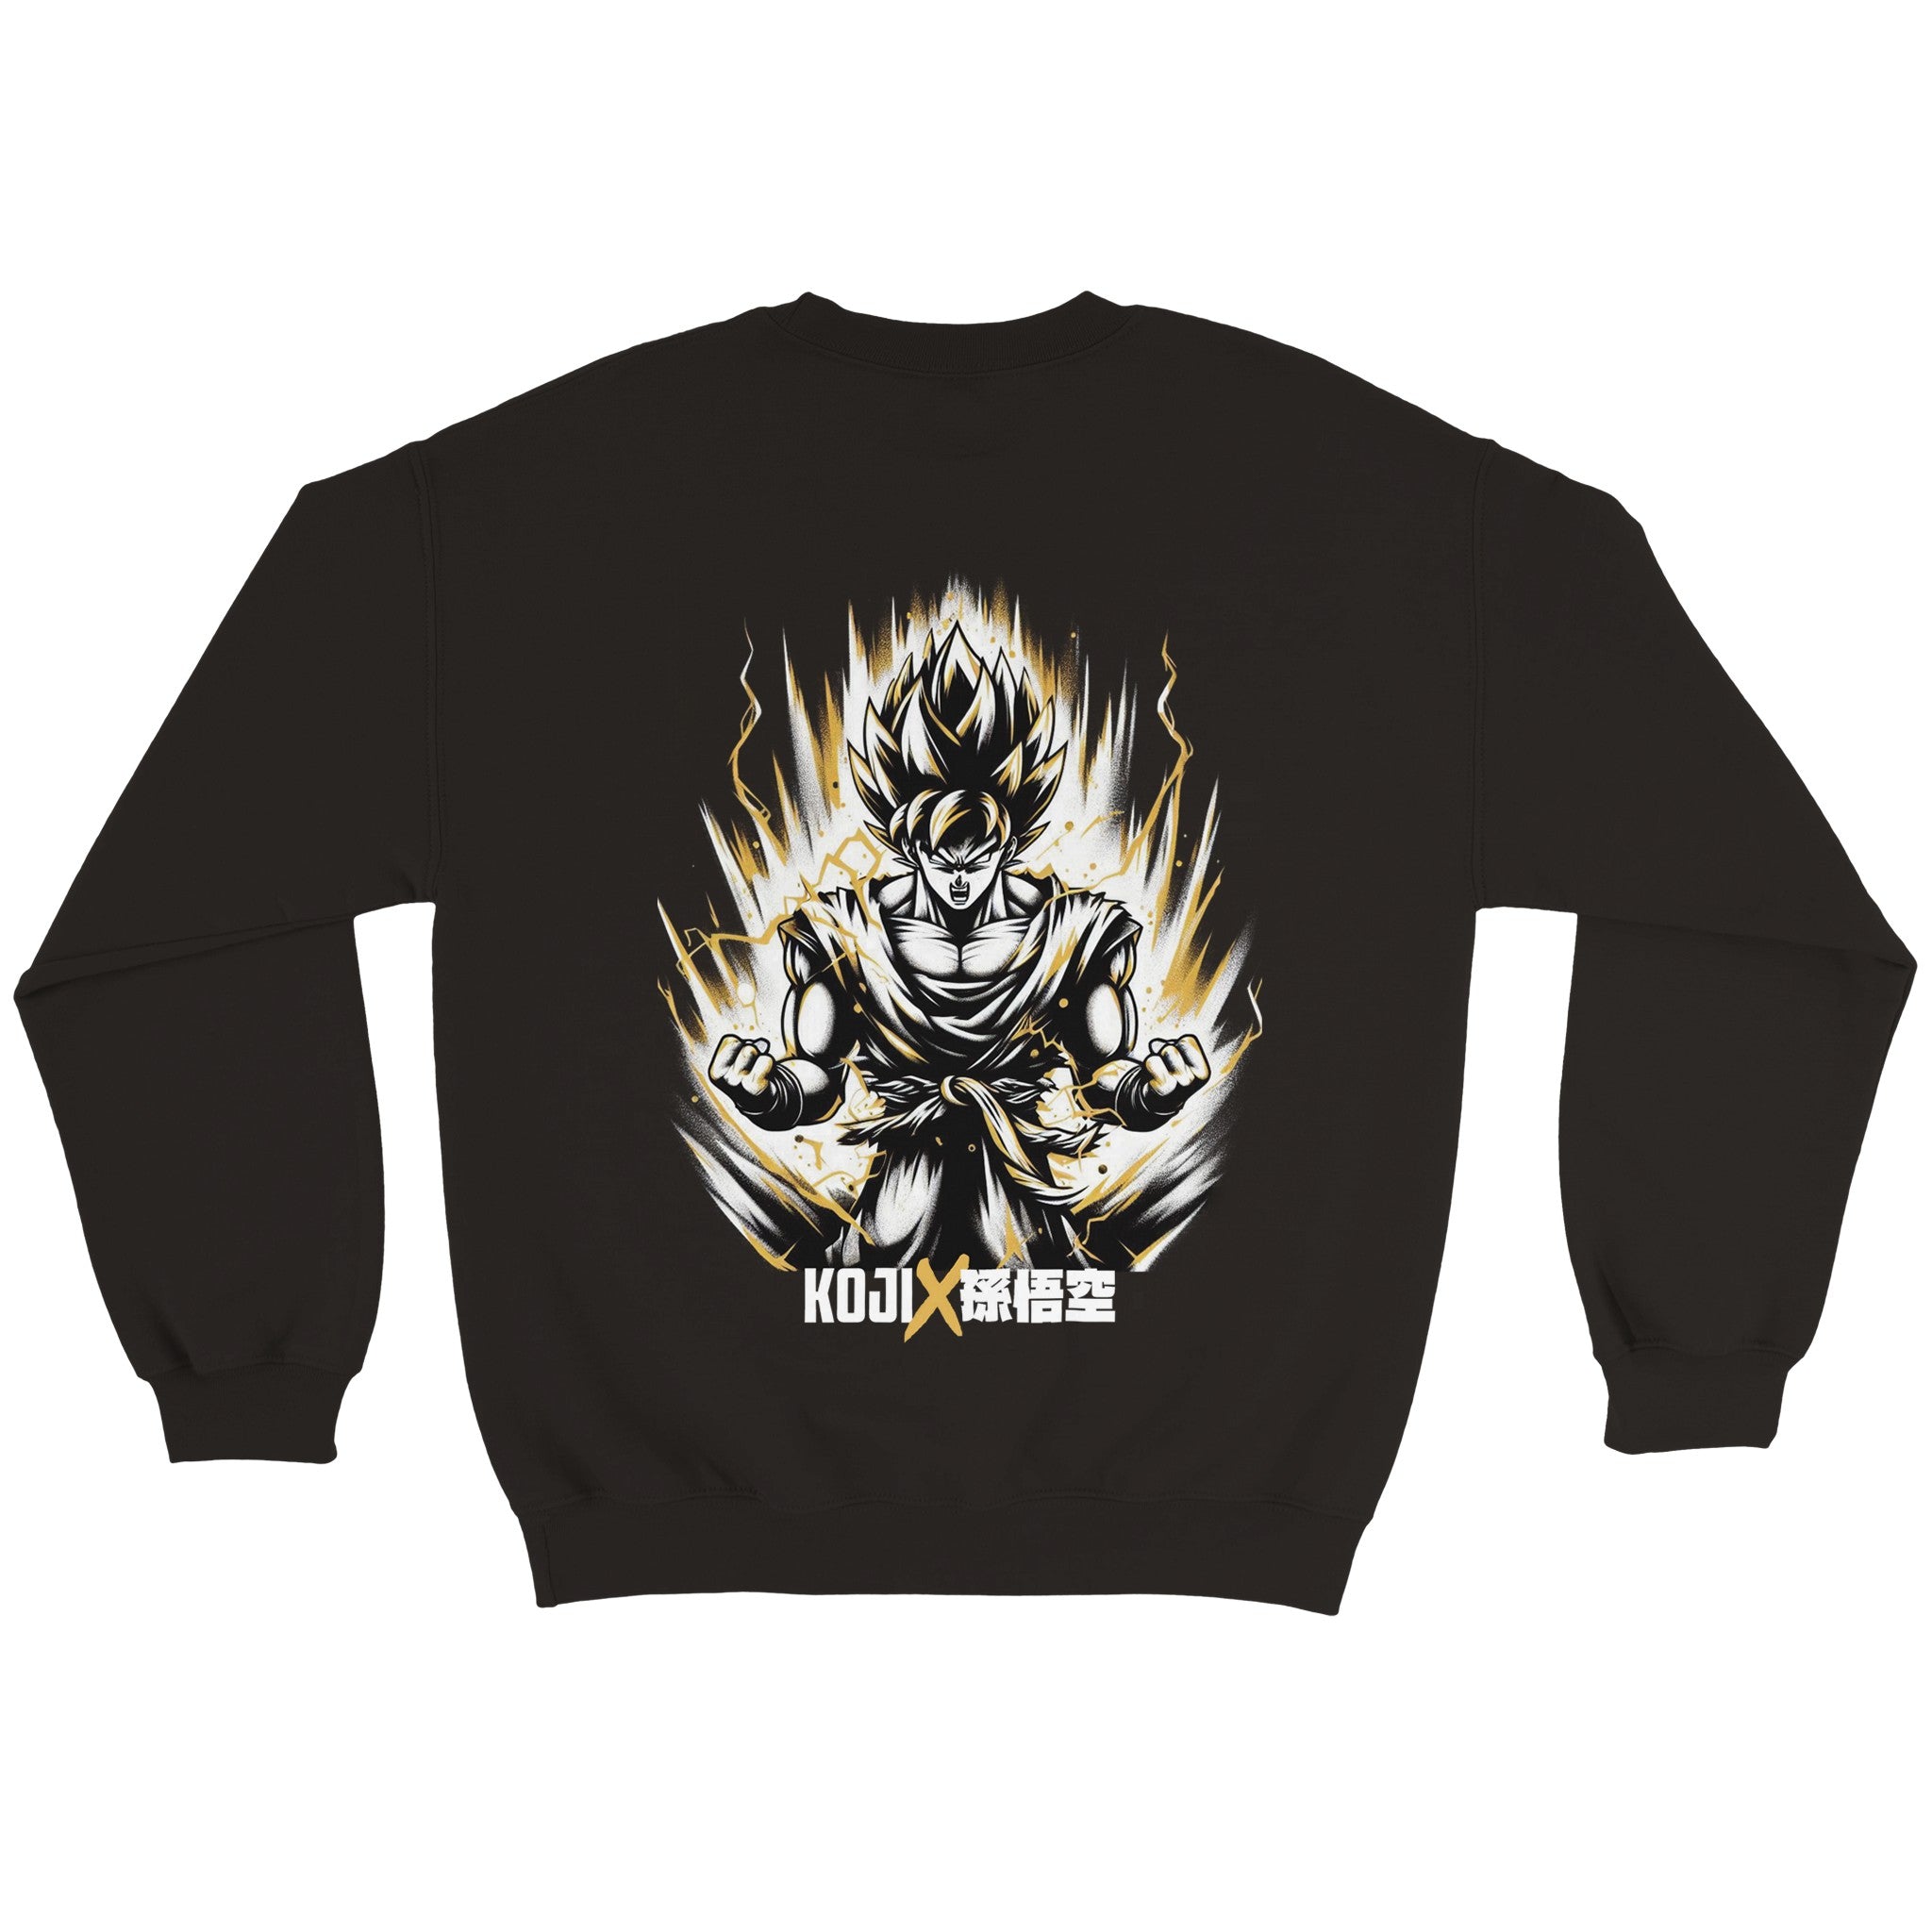 Koji x Dragonball - Saiyan Goku Sweatshirt